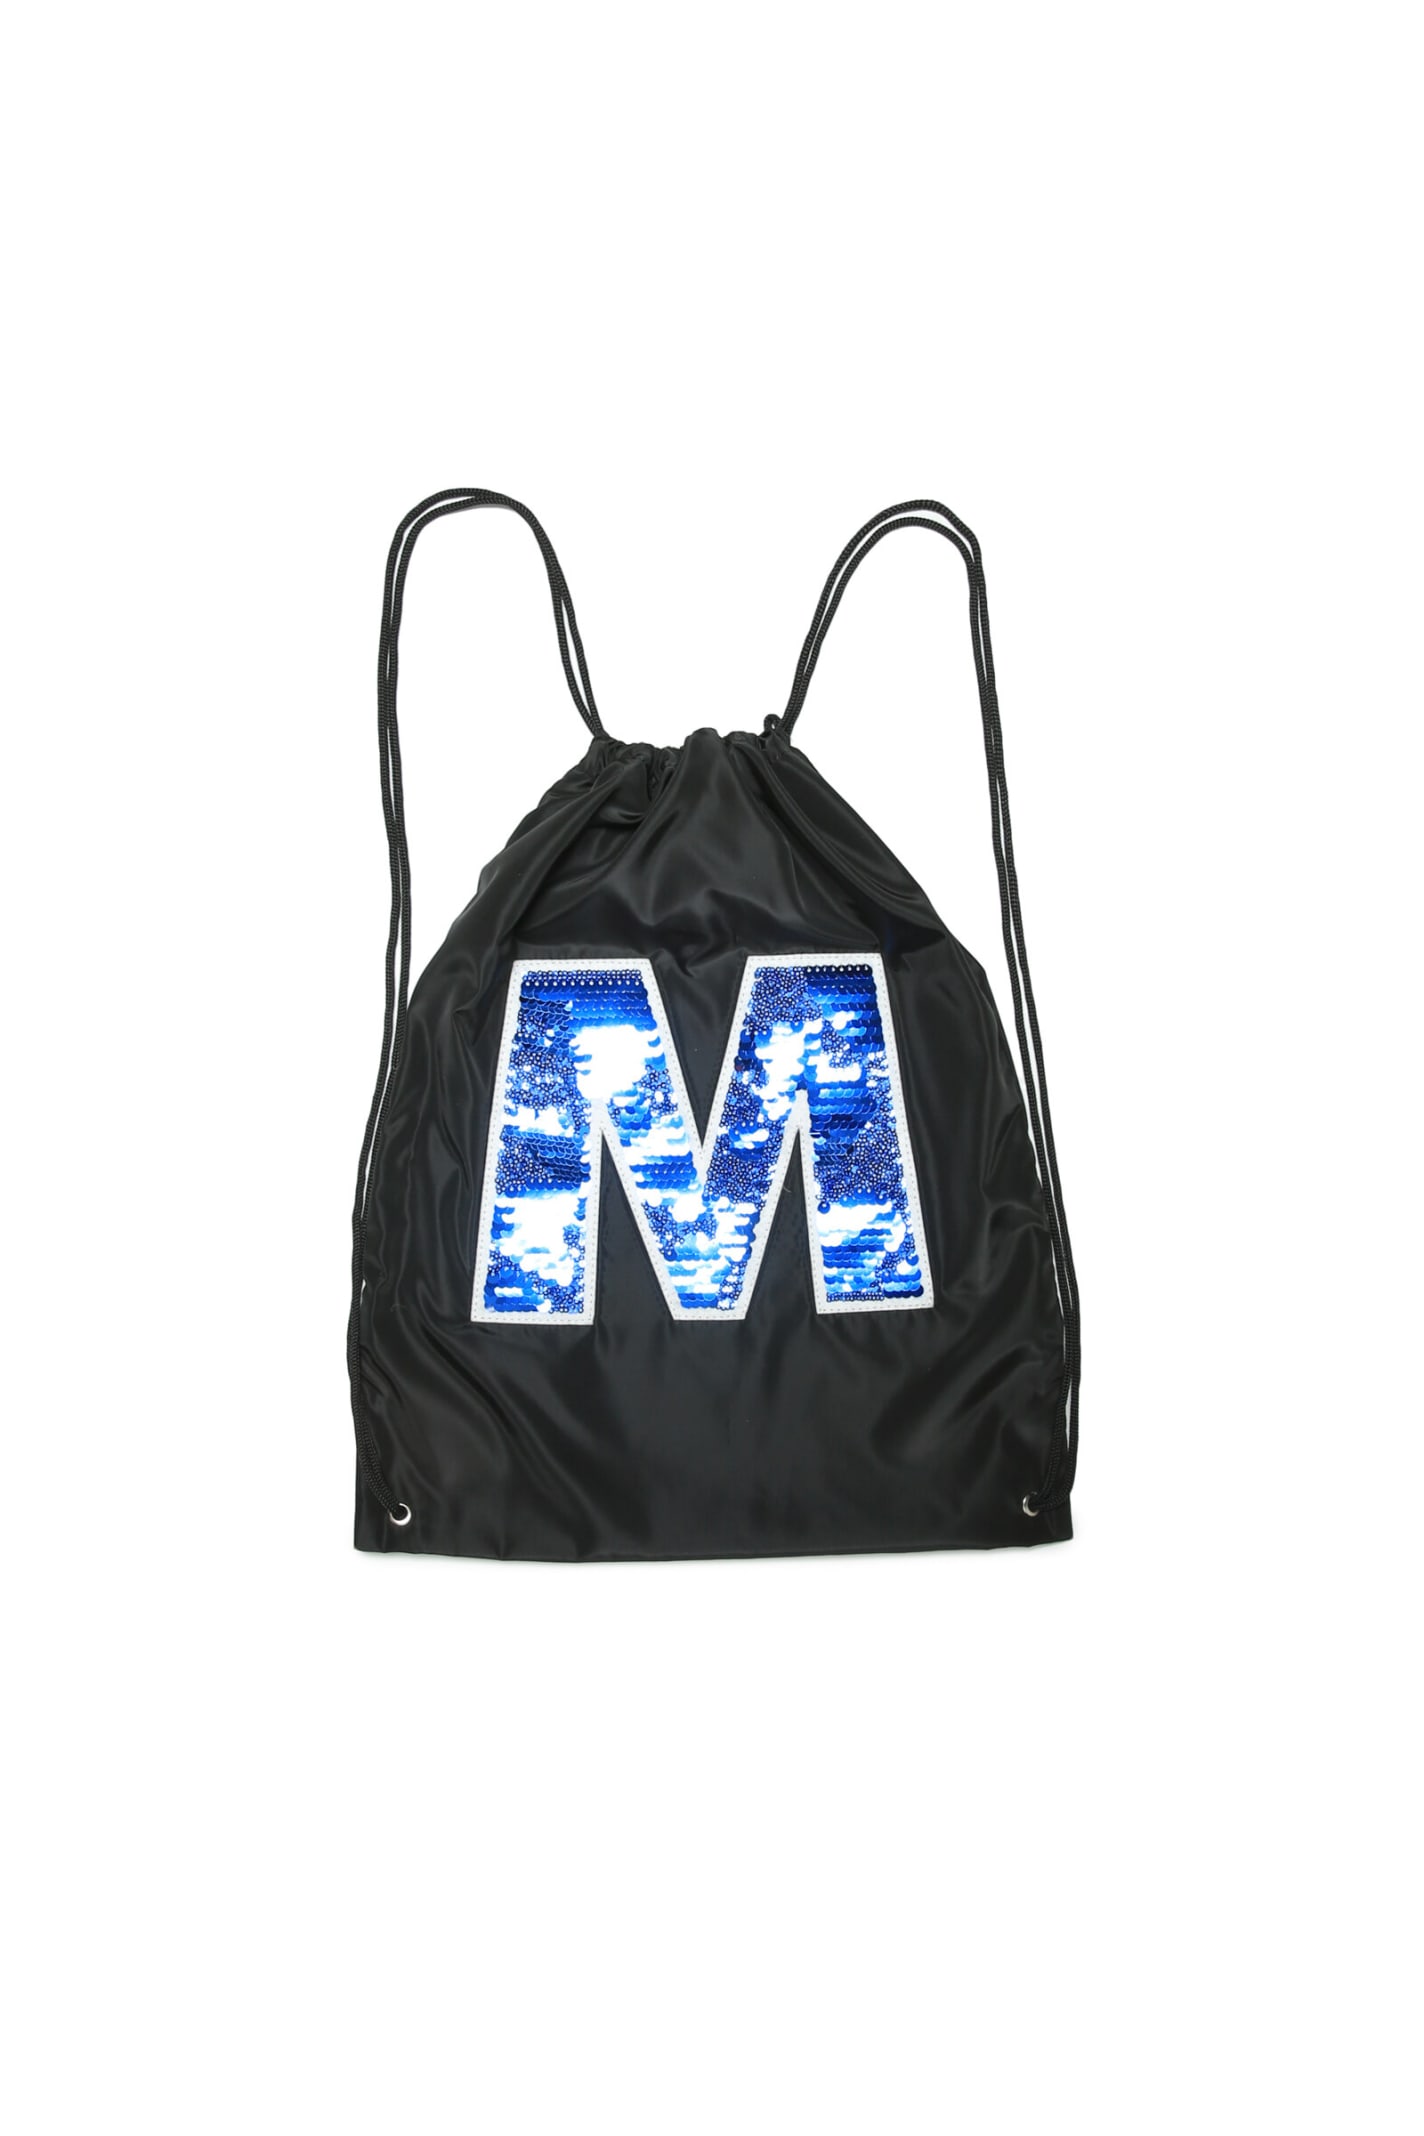 Mw71f Bags Marni